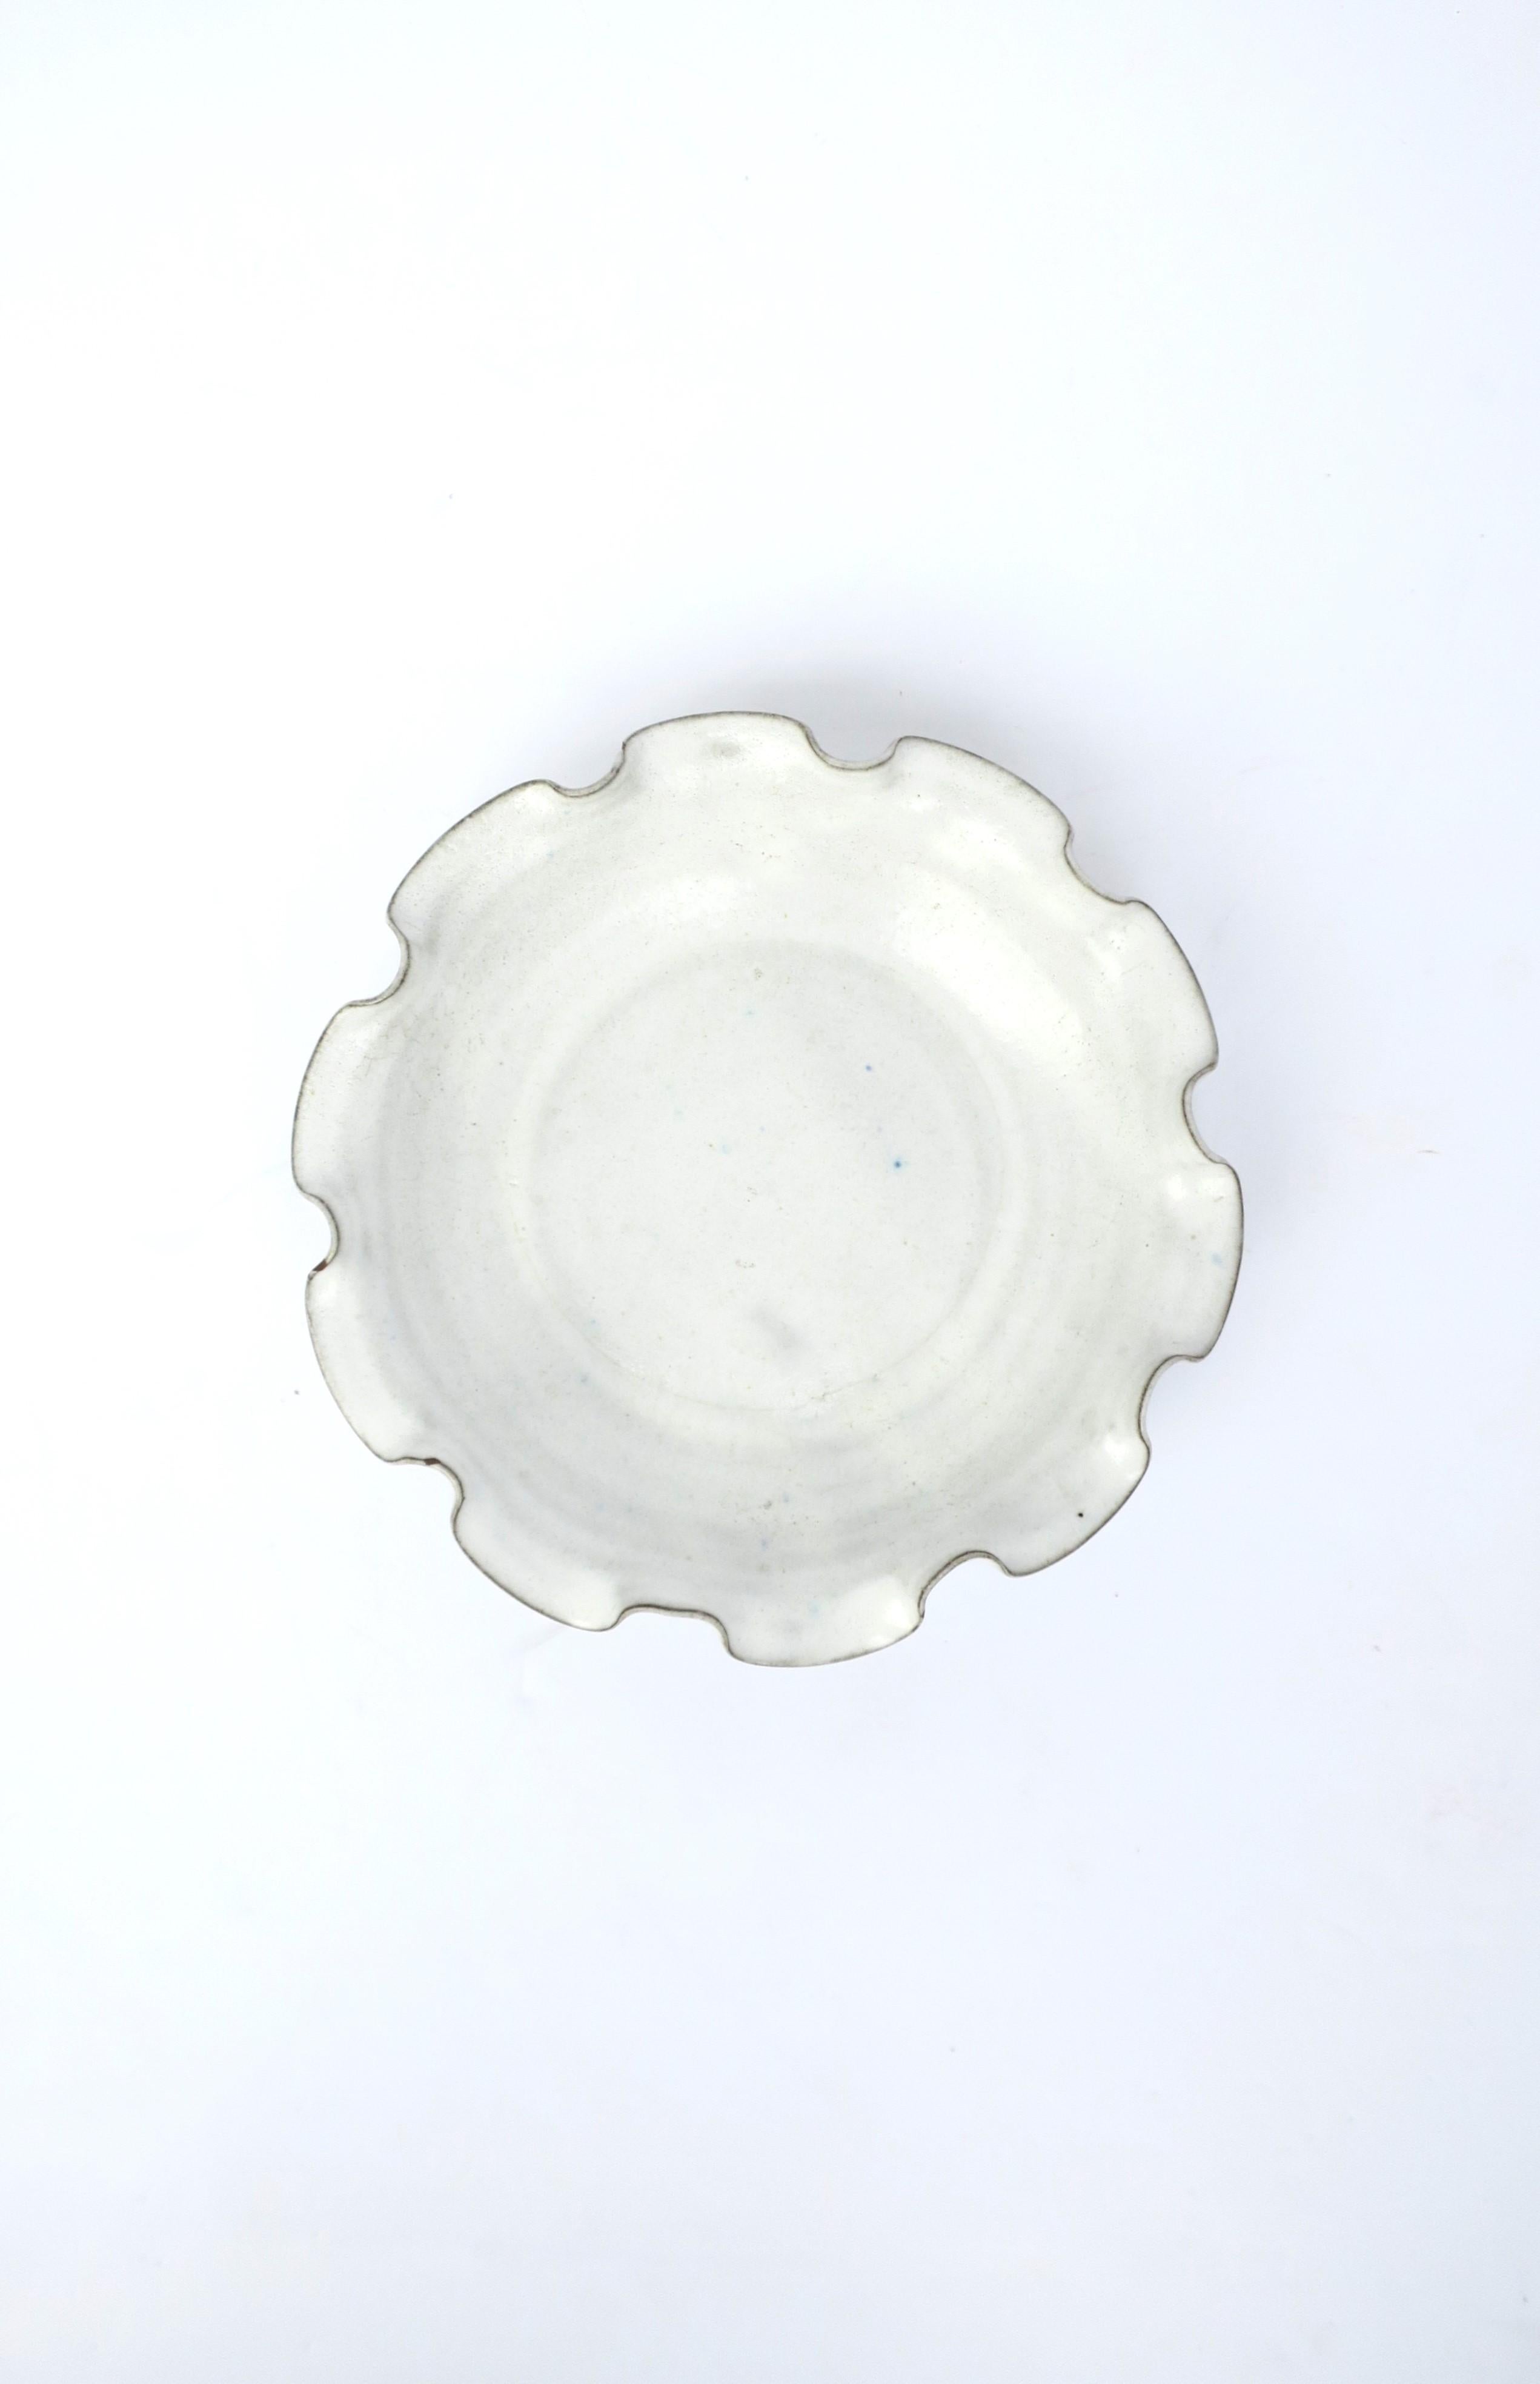 Un magnifique bol en poterie blanche avec un rebord volant. Idéal comme pièce autonome, comme fourre-tout ou comme bol de service. Dimensions : 8.75